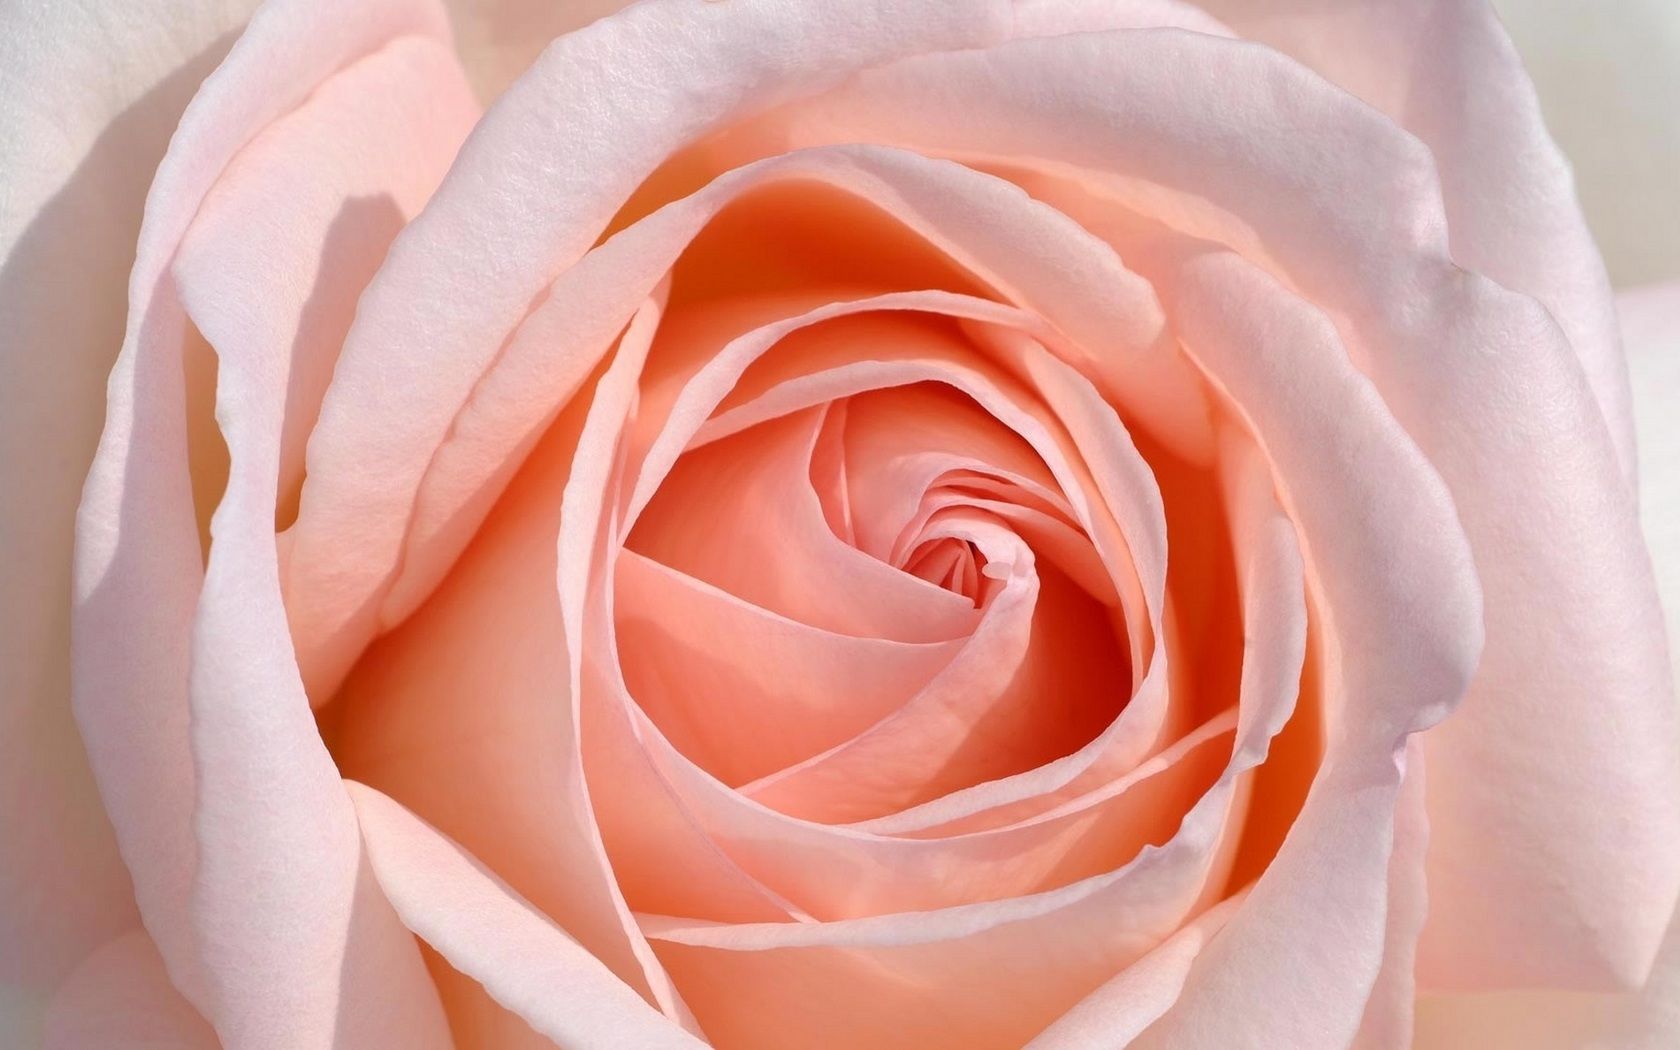 Чайно гибридные розы персикового цвета